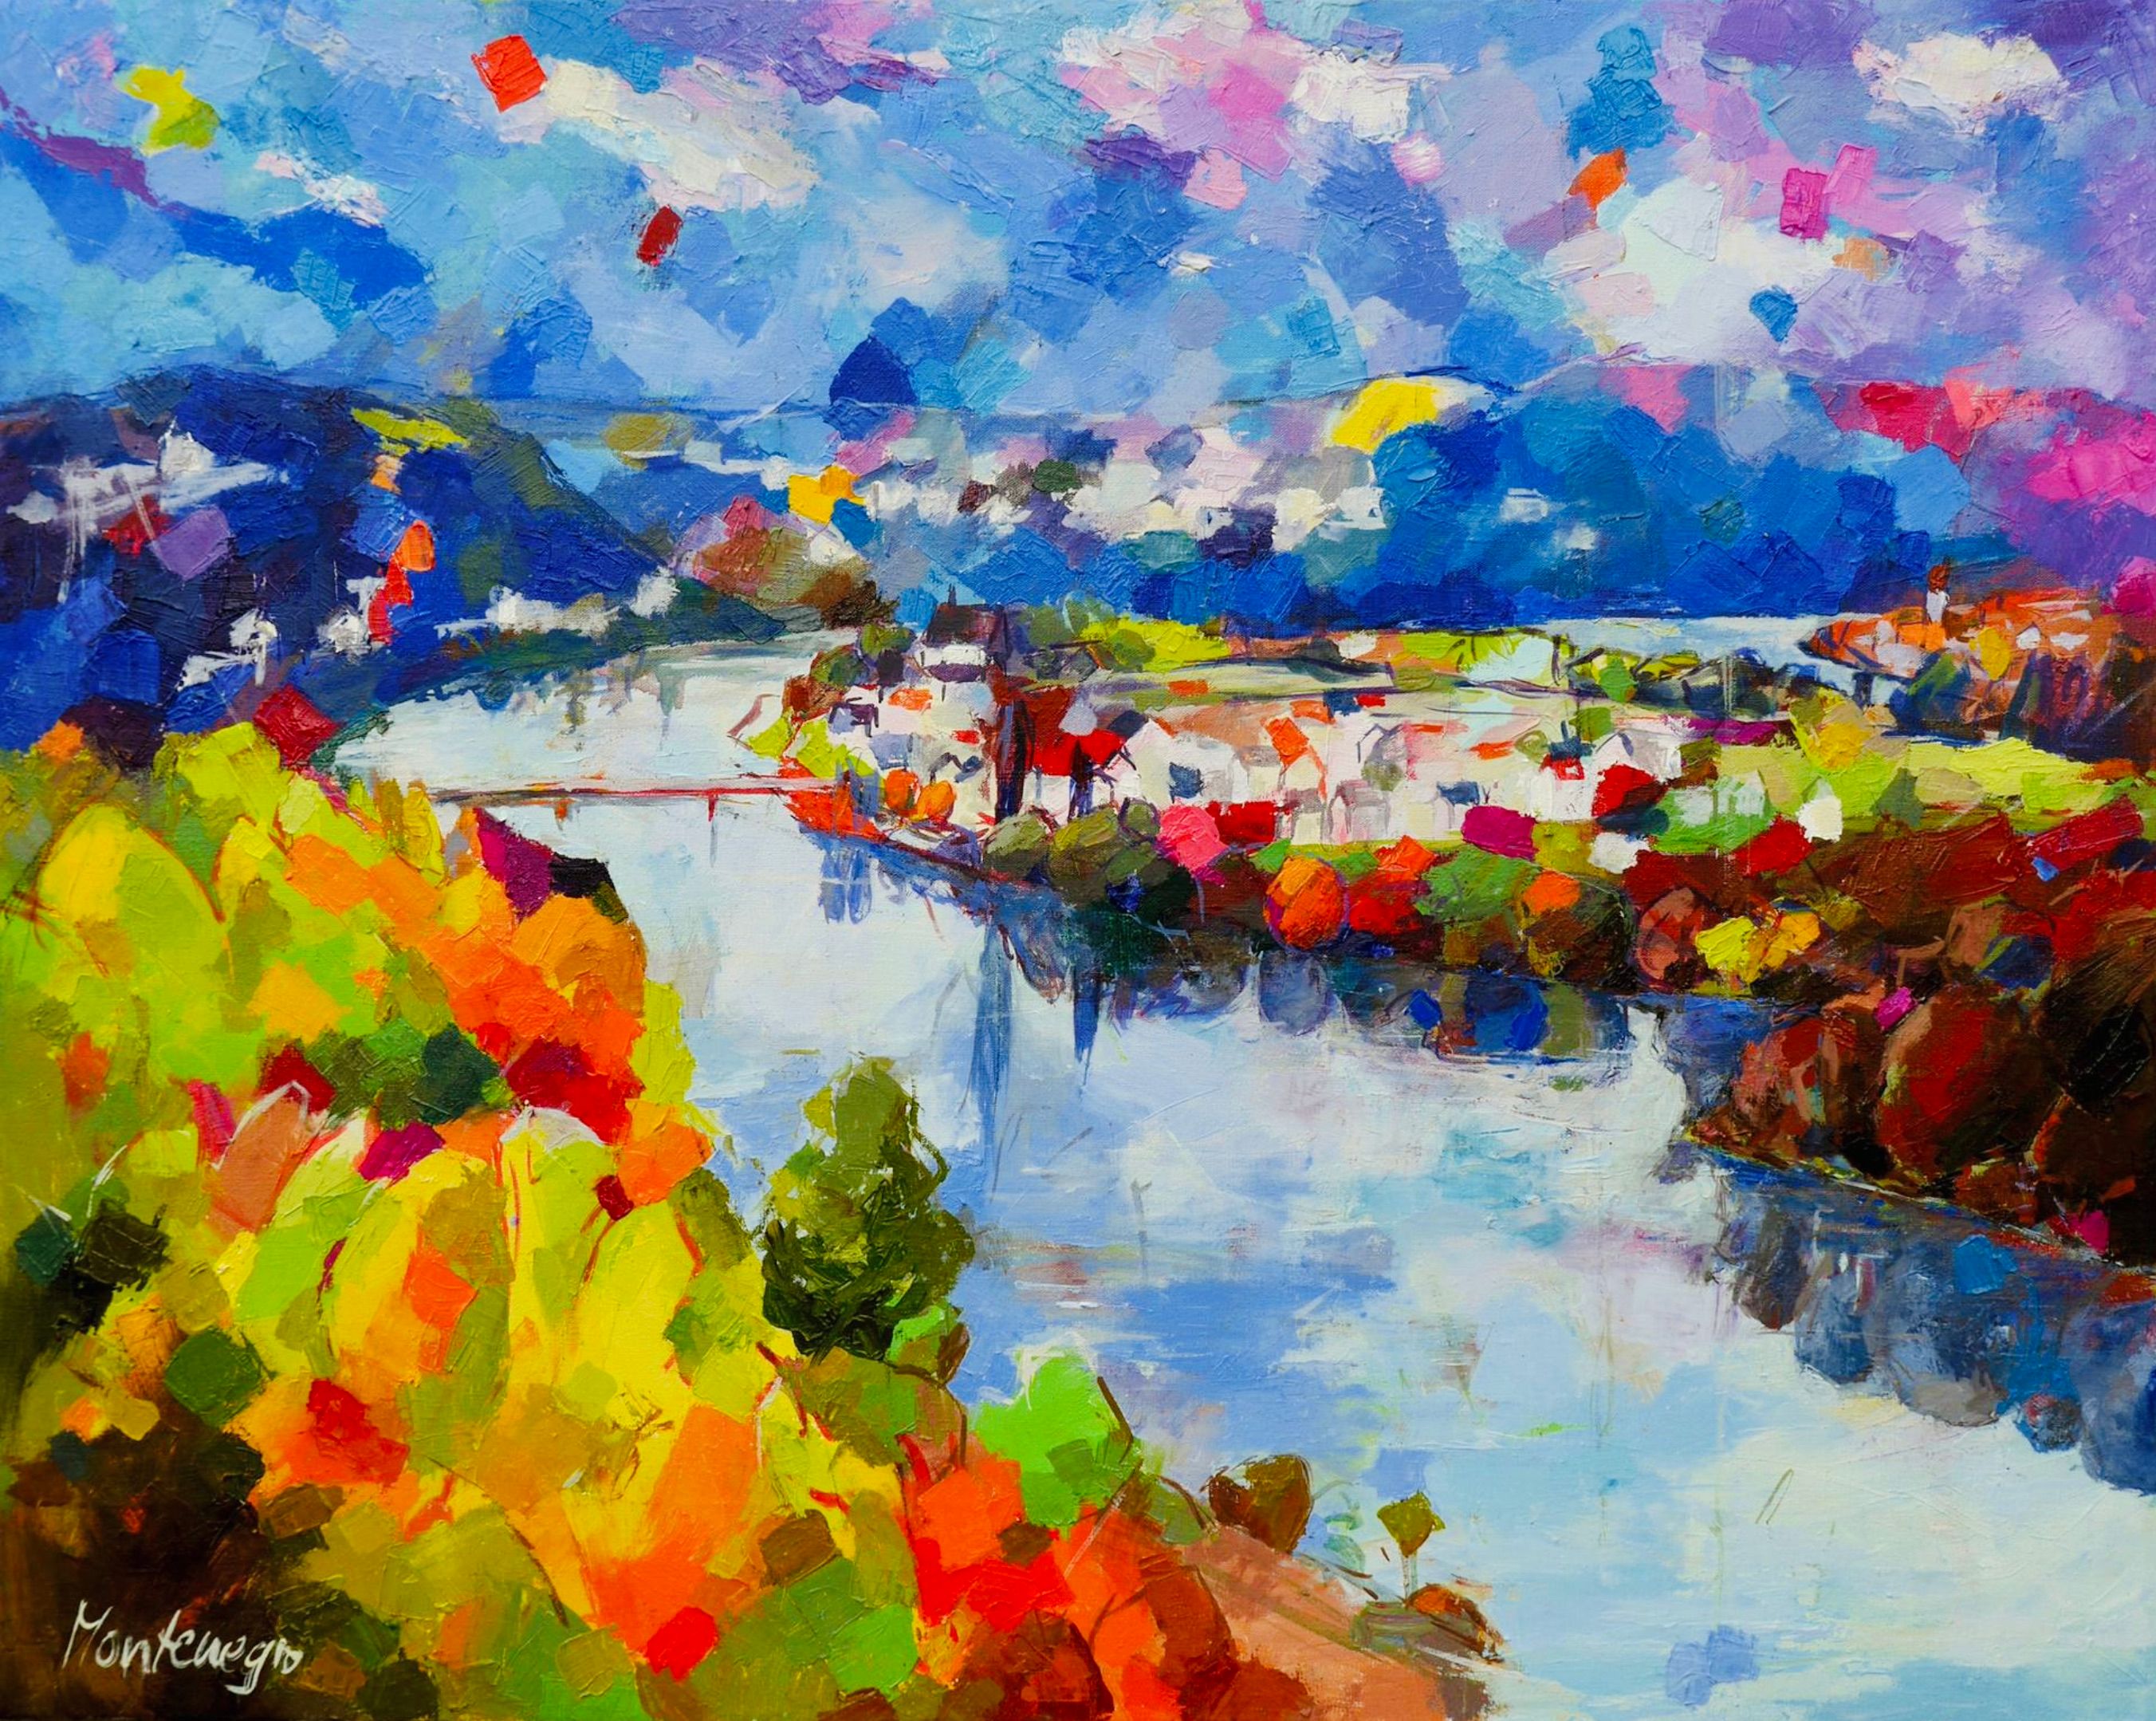 Miriam Montenegro dipinto impressionista paesaggio con fiume blu circondato da alberi decidui